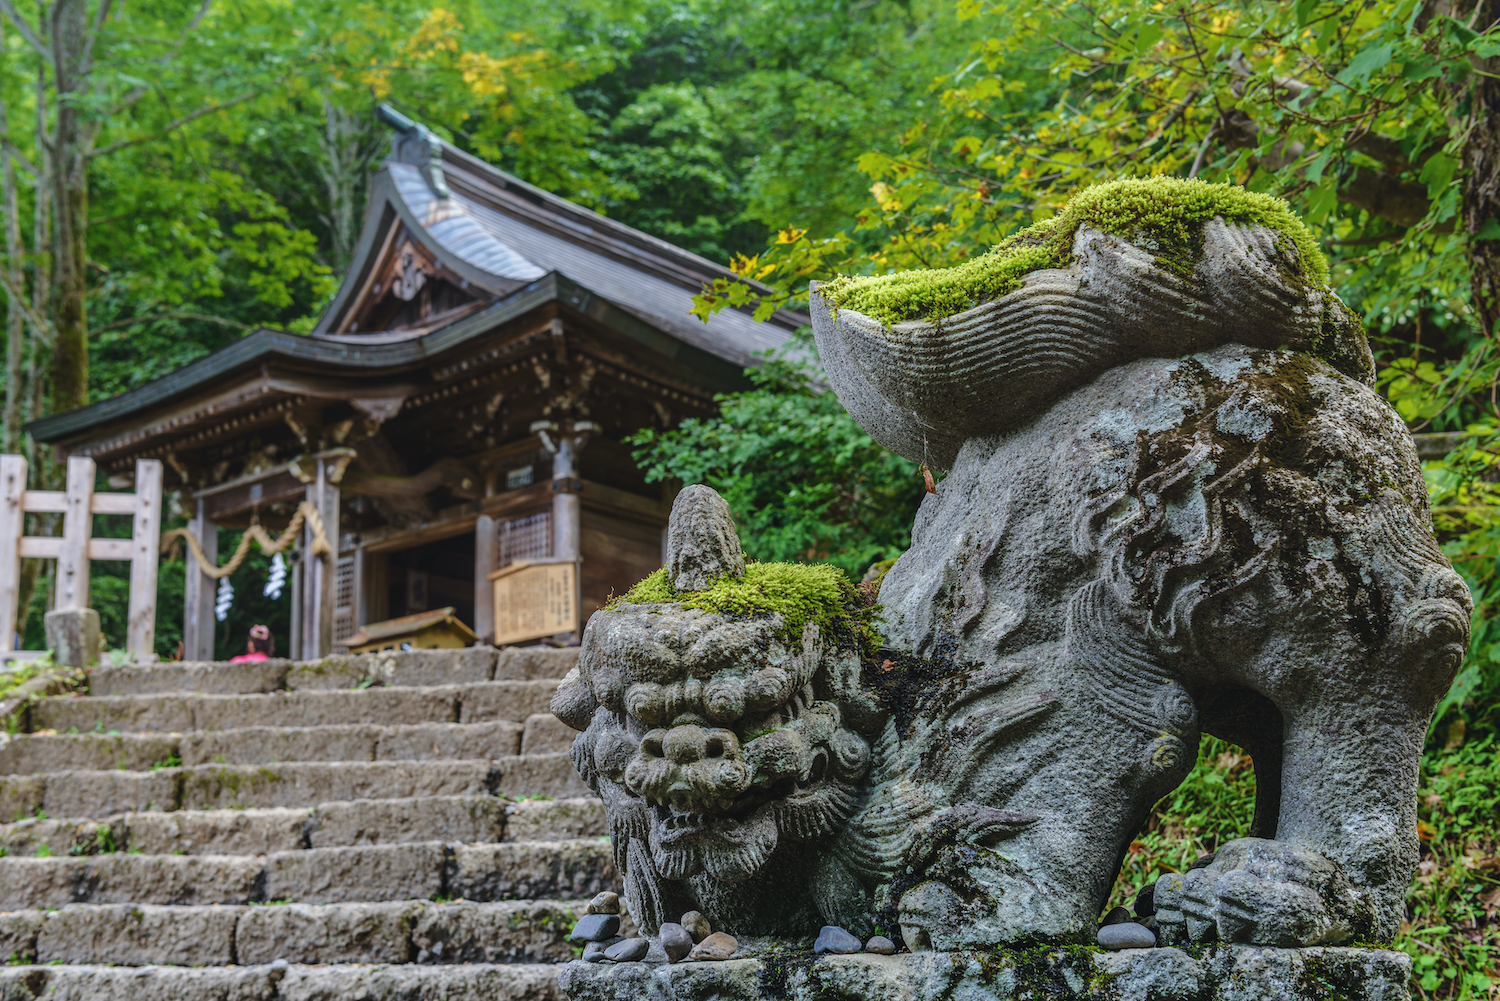 Togakushi shrine with its guardian dog in Nagano, Japan